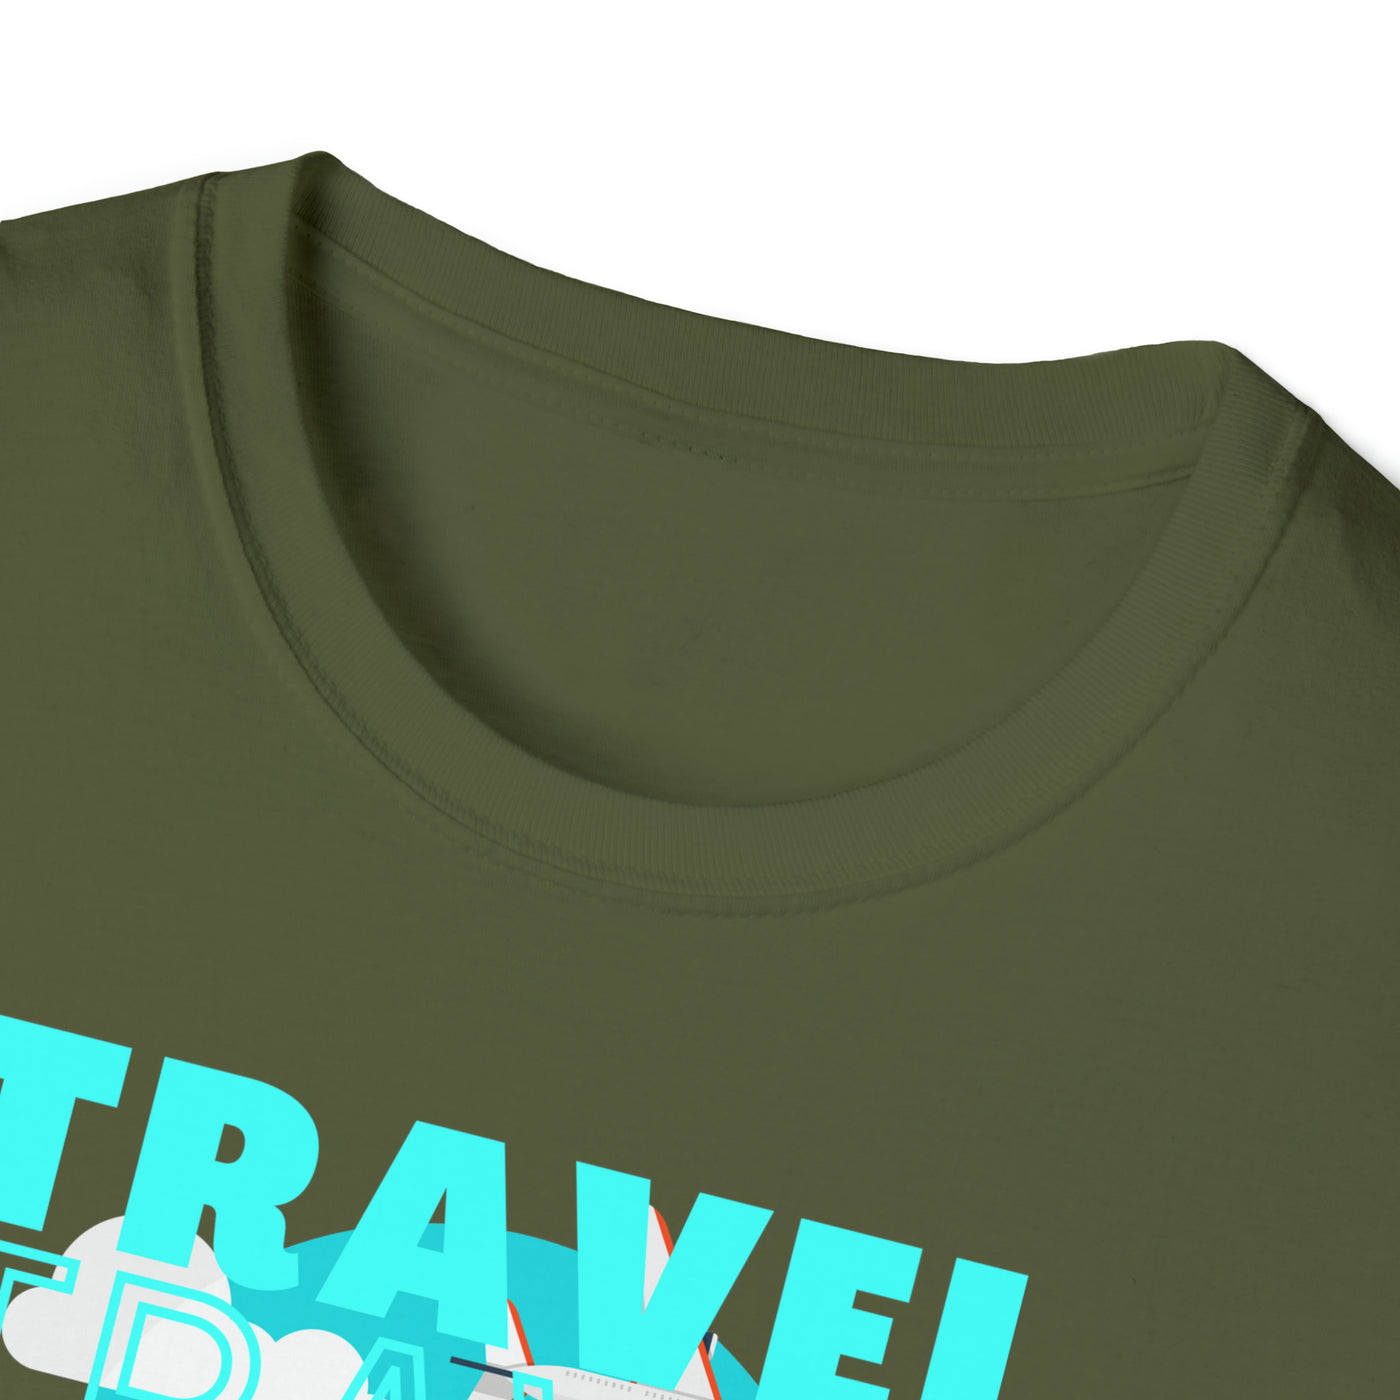 travel Unisex Softstyle T-Shirt